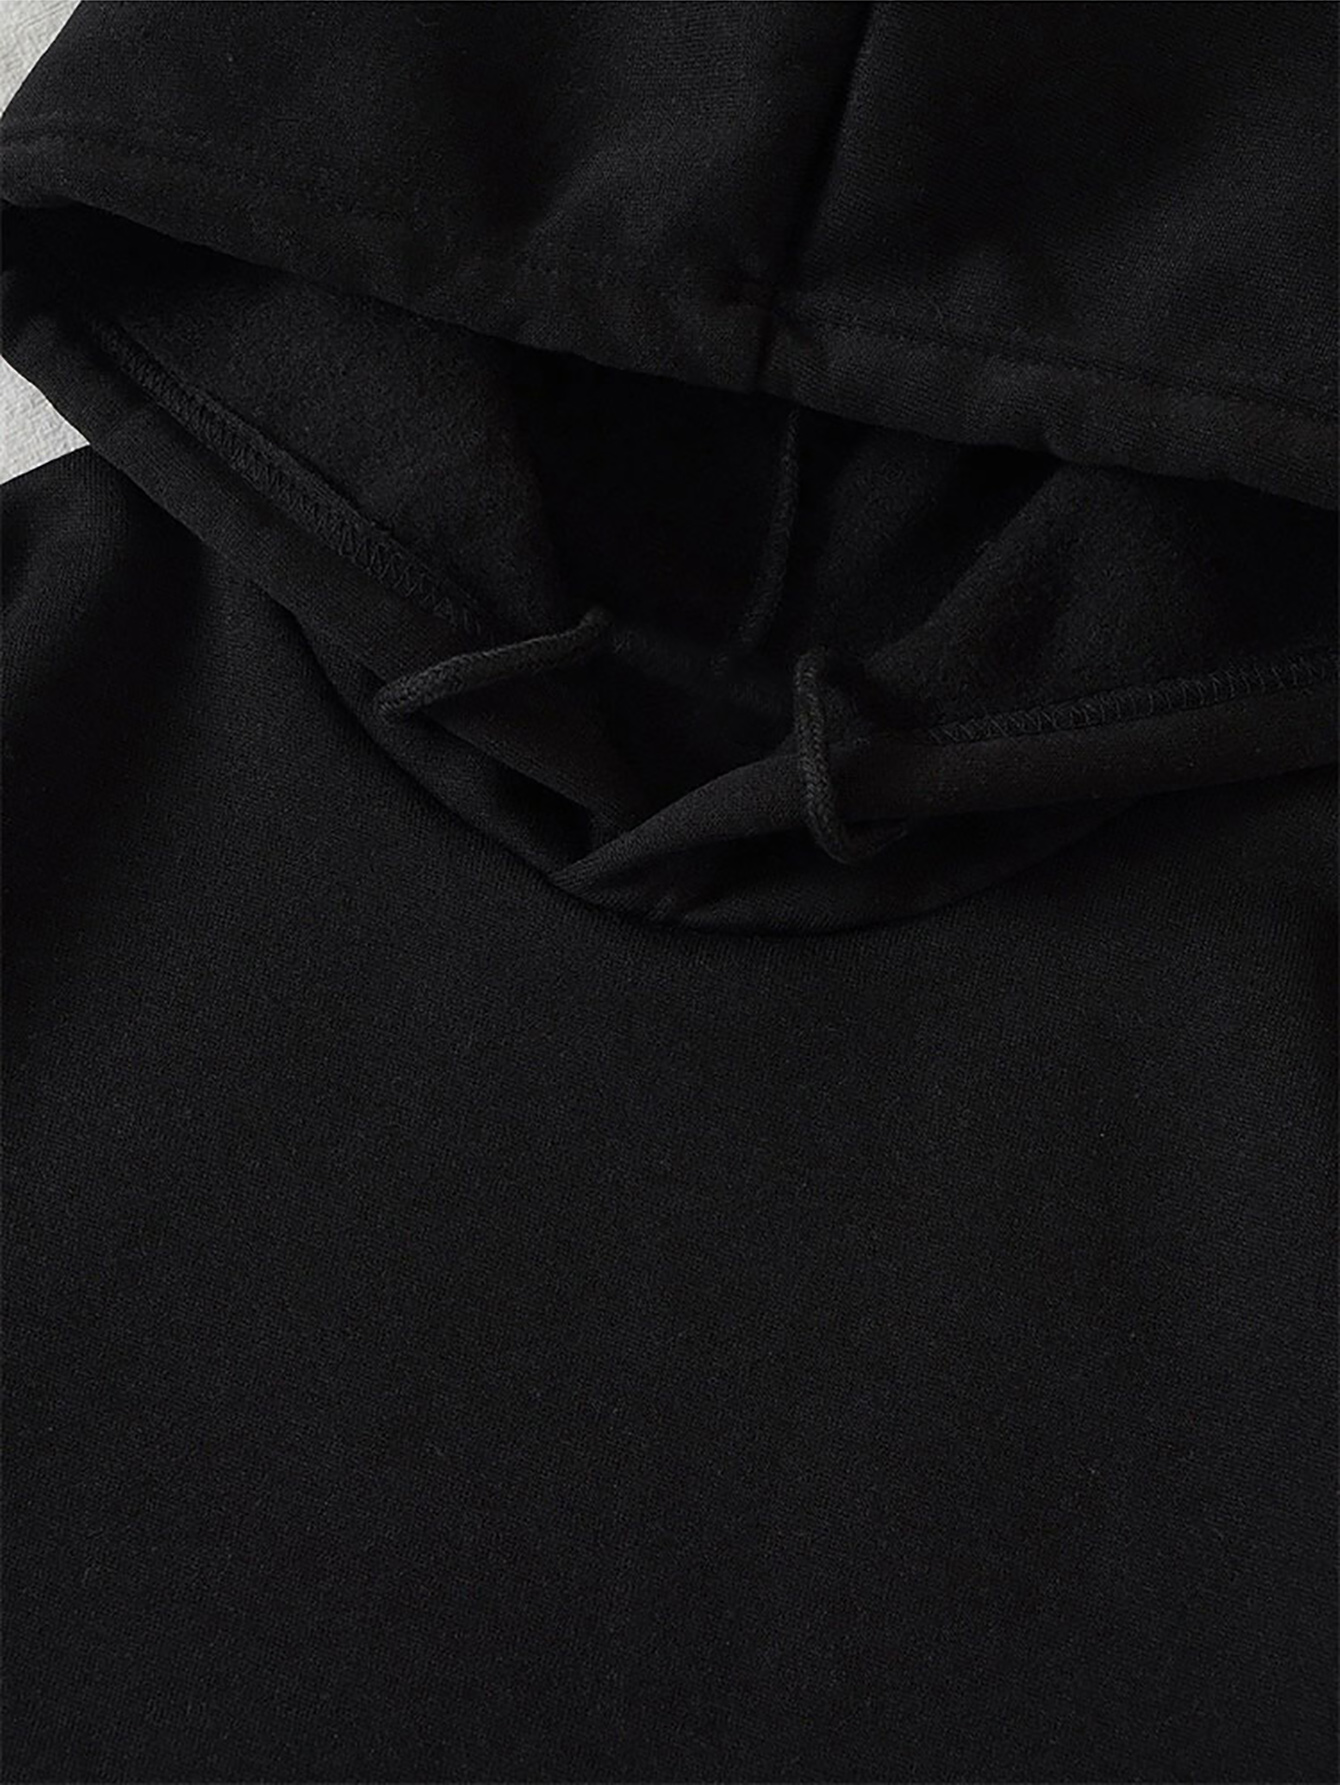 Women's Hoodie Long Sleeve Hoodies & Sweatshirts Printing Pocket Casual Human Face Lines display picture 8